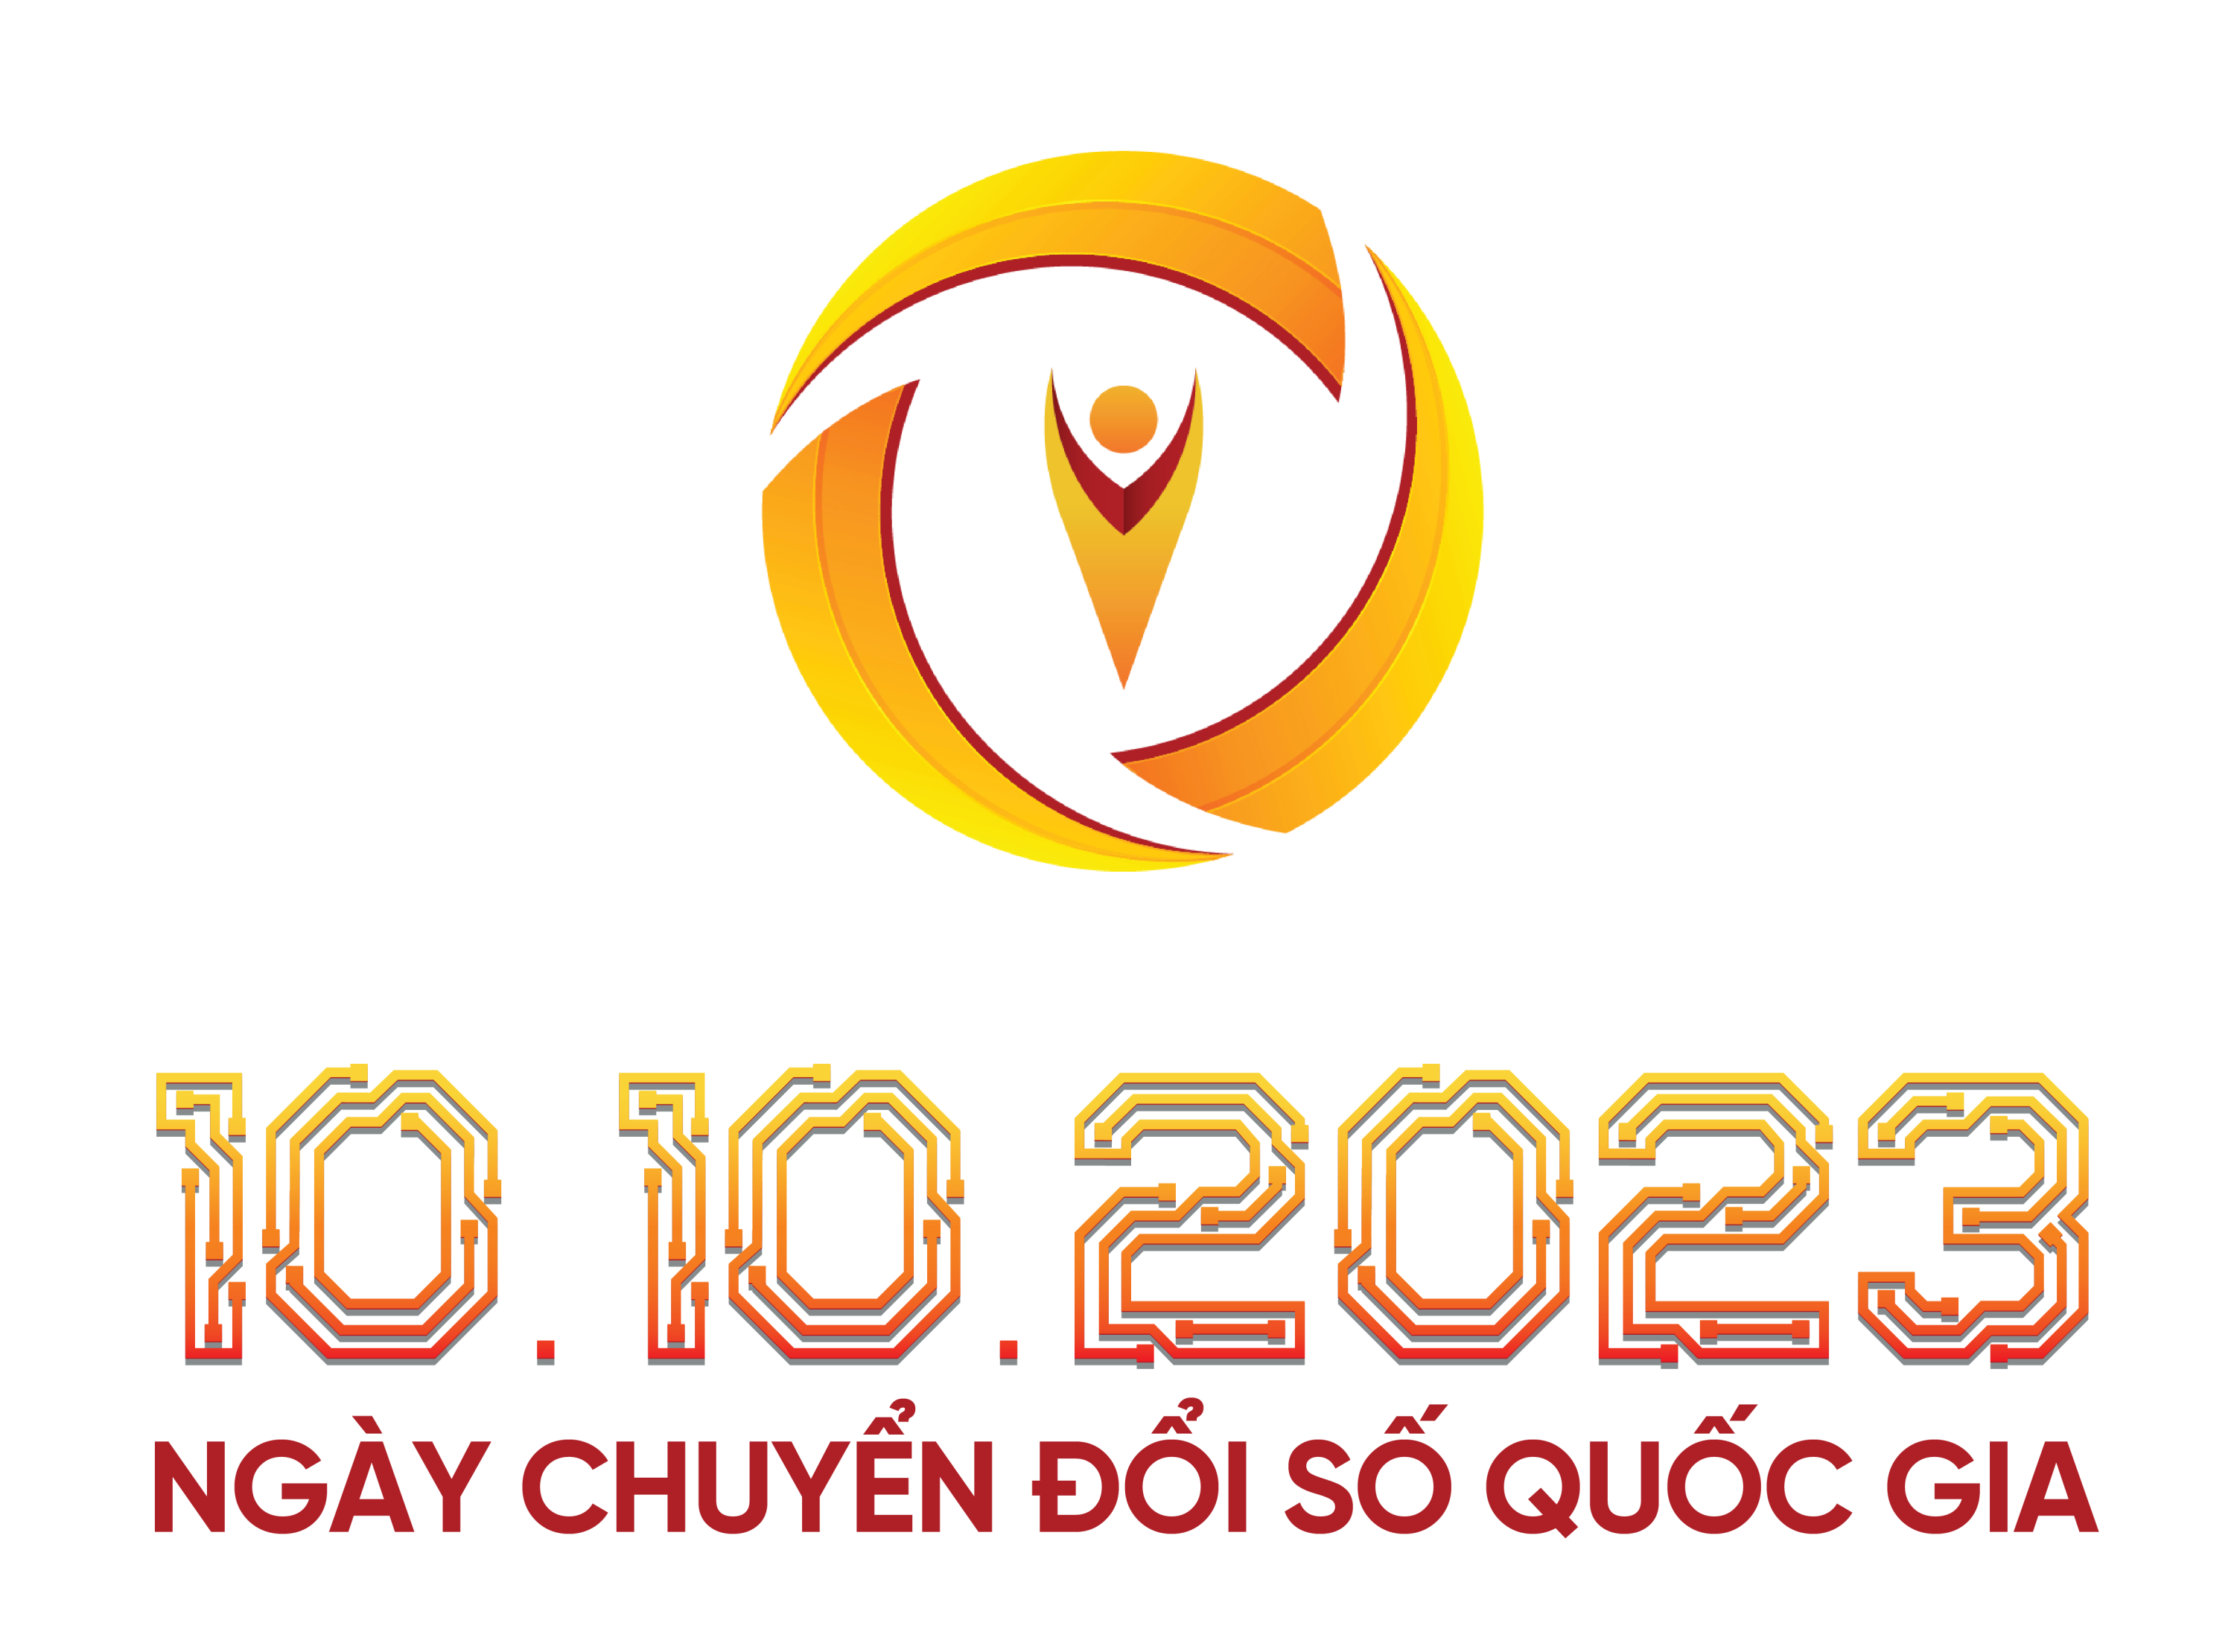 Triển khai các hoạt động hưởng ứng Ngày Chuyển đổi số Quốc gia năm 2023 trên địa bàn tỉnh Phú Thọ